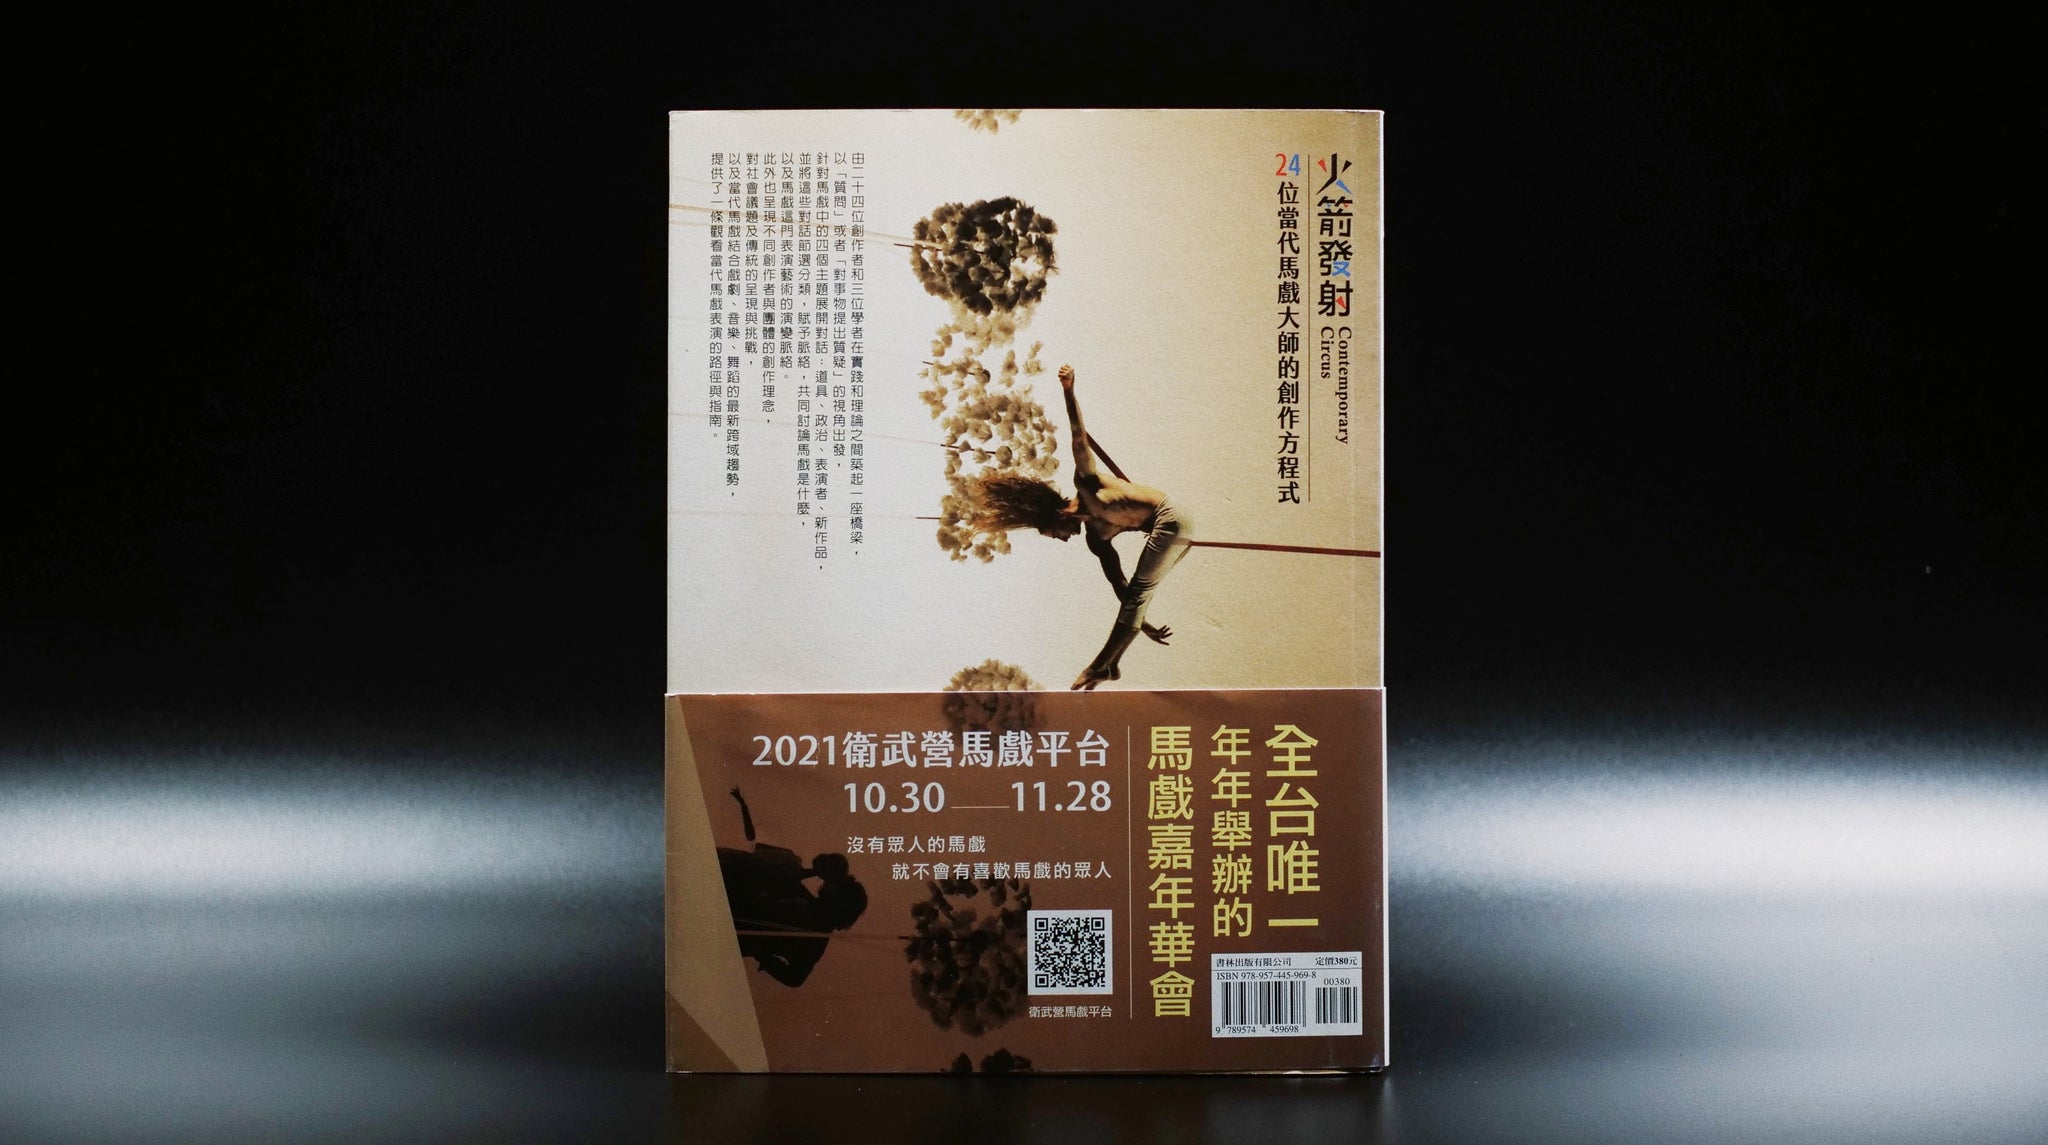 火箭發射: 24位當代馬戲大師的創作方程式 - 台灣出版